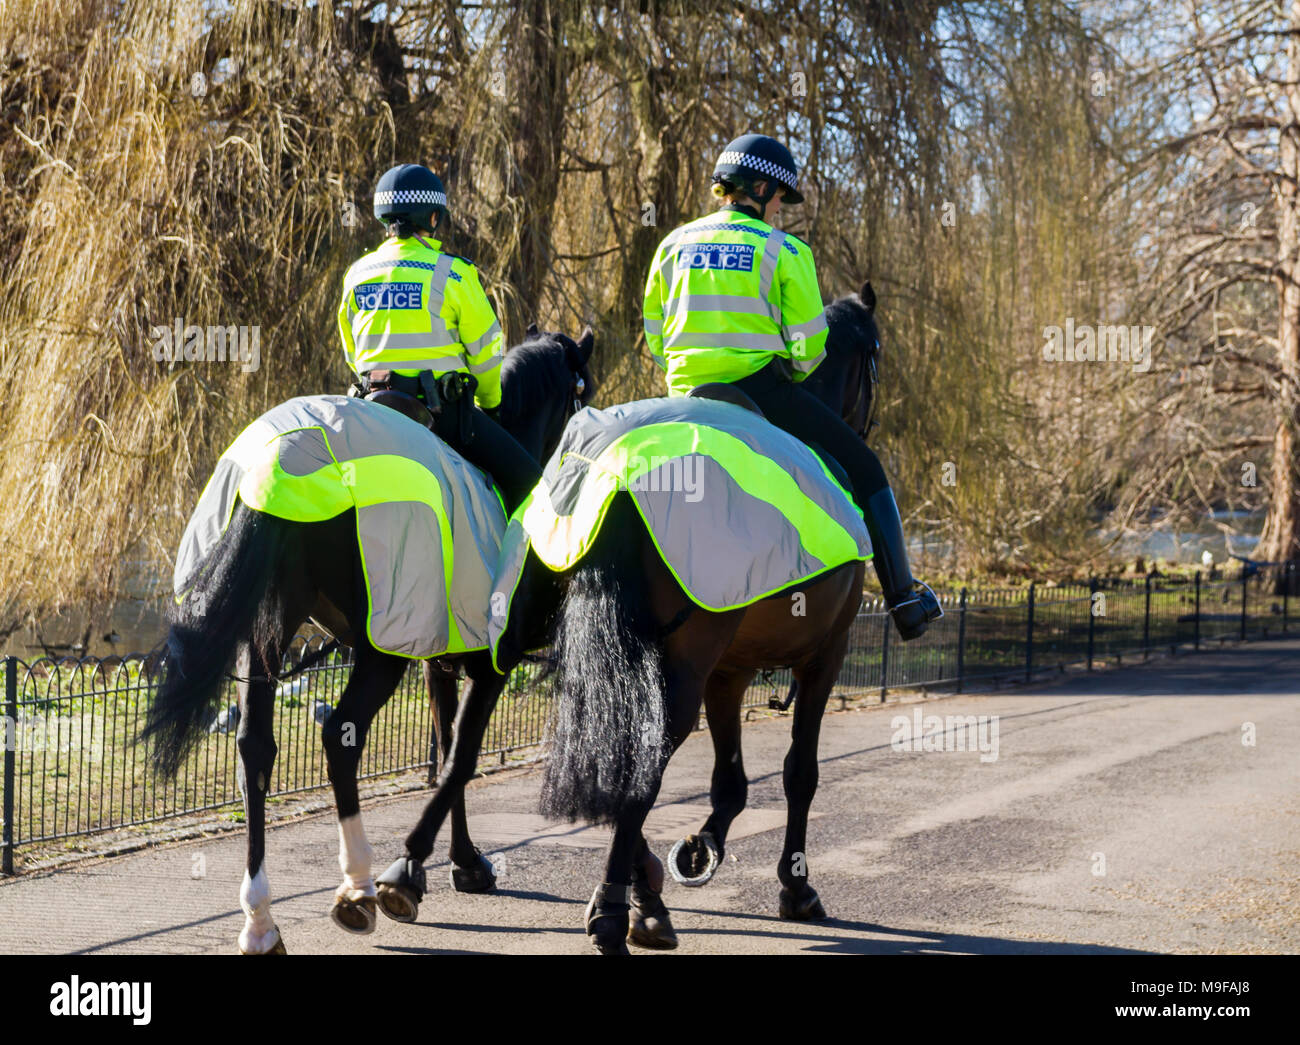 A caballo de la Policía Metropolitana, oficiales de la policía montada el patrullaje de la policía de Londres Central de Policía británico Old Bill gran bretaña la noción bobbys guindillas par Foto de stock